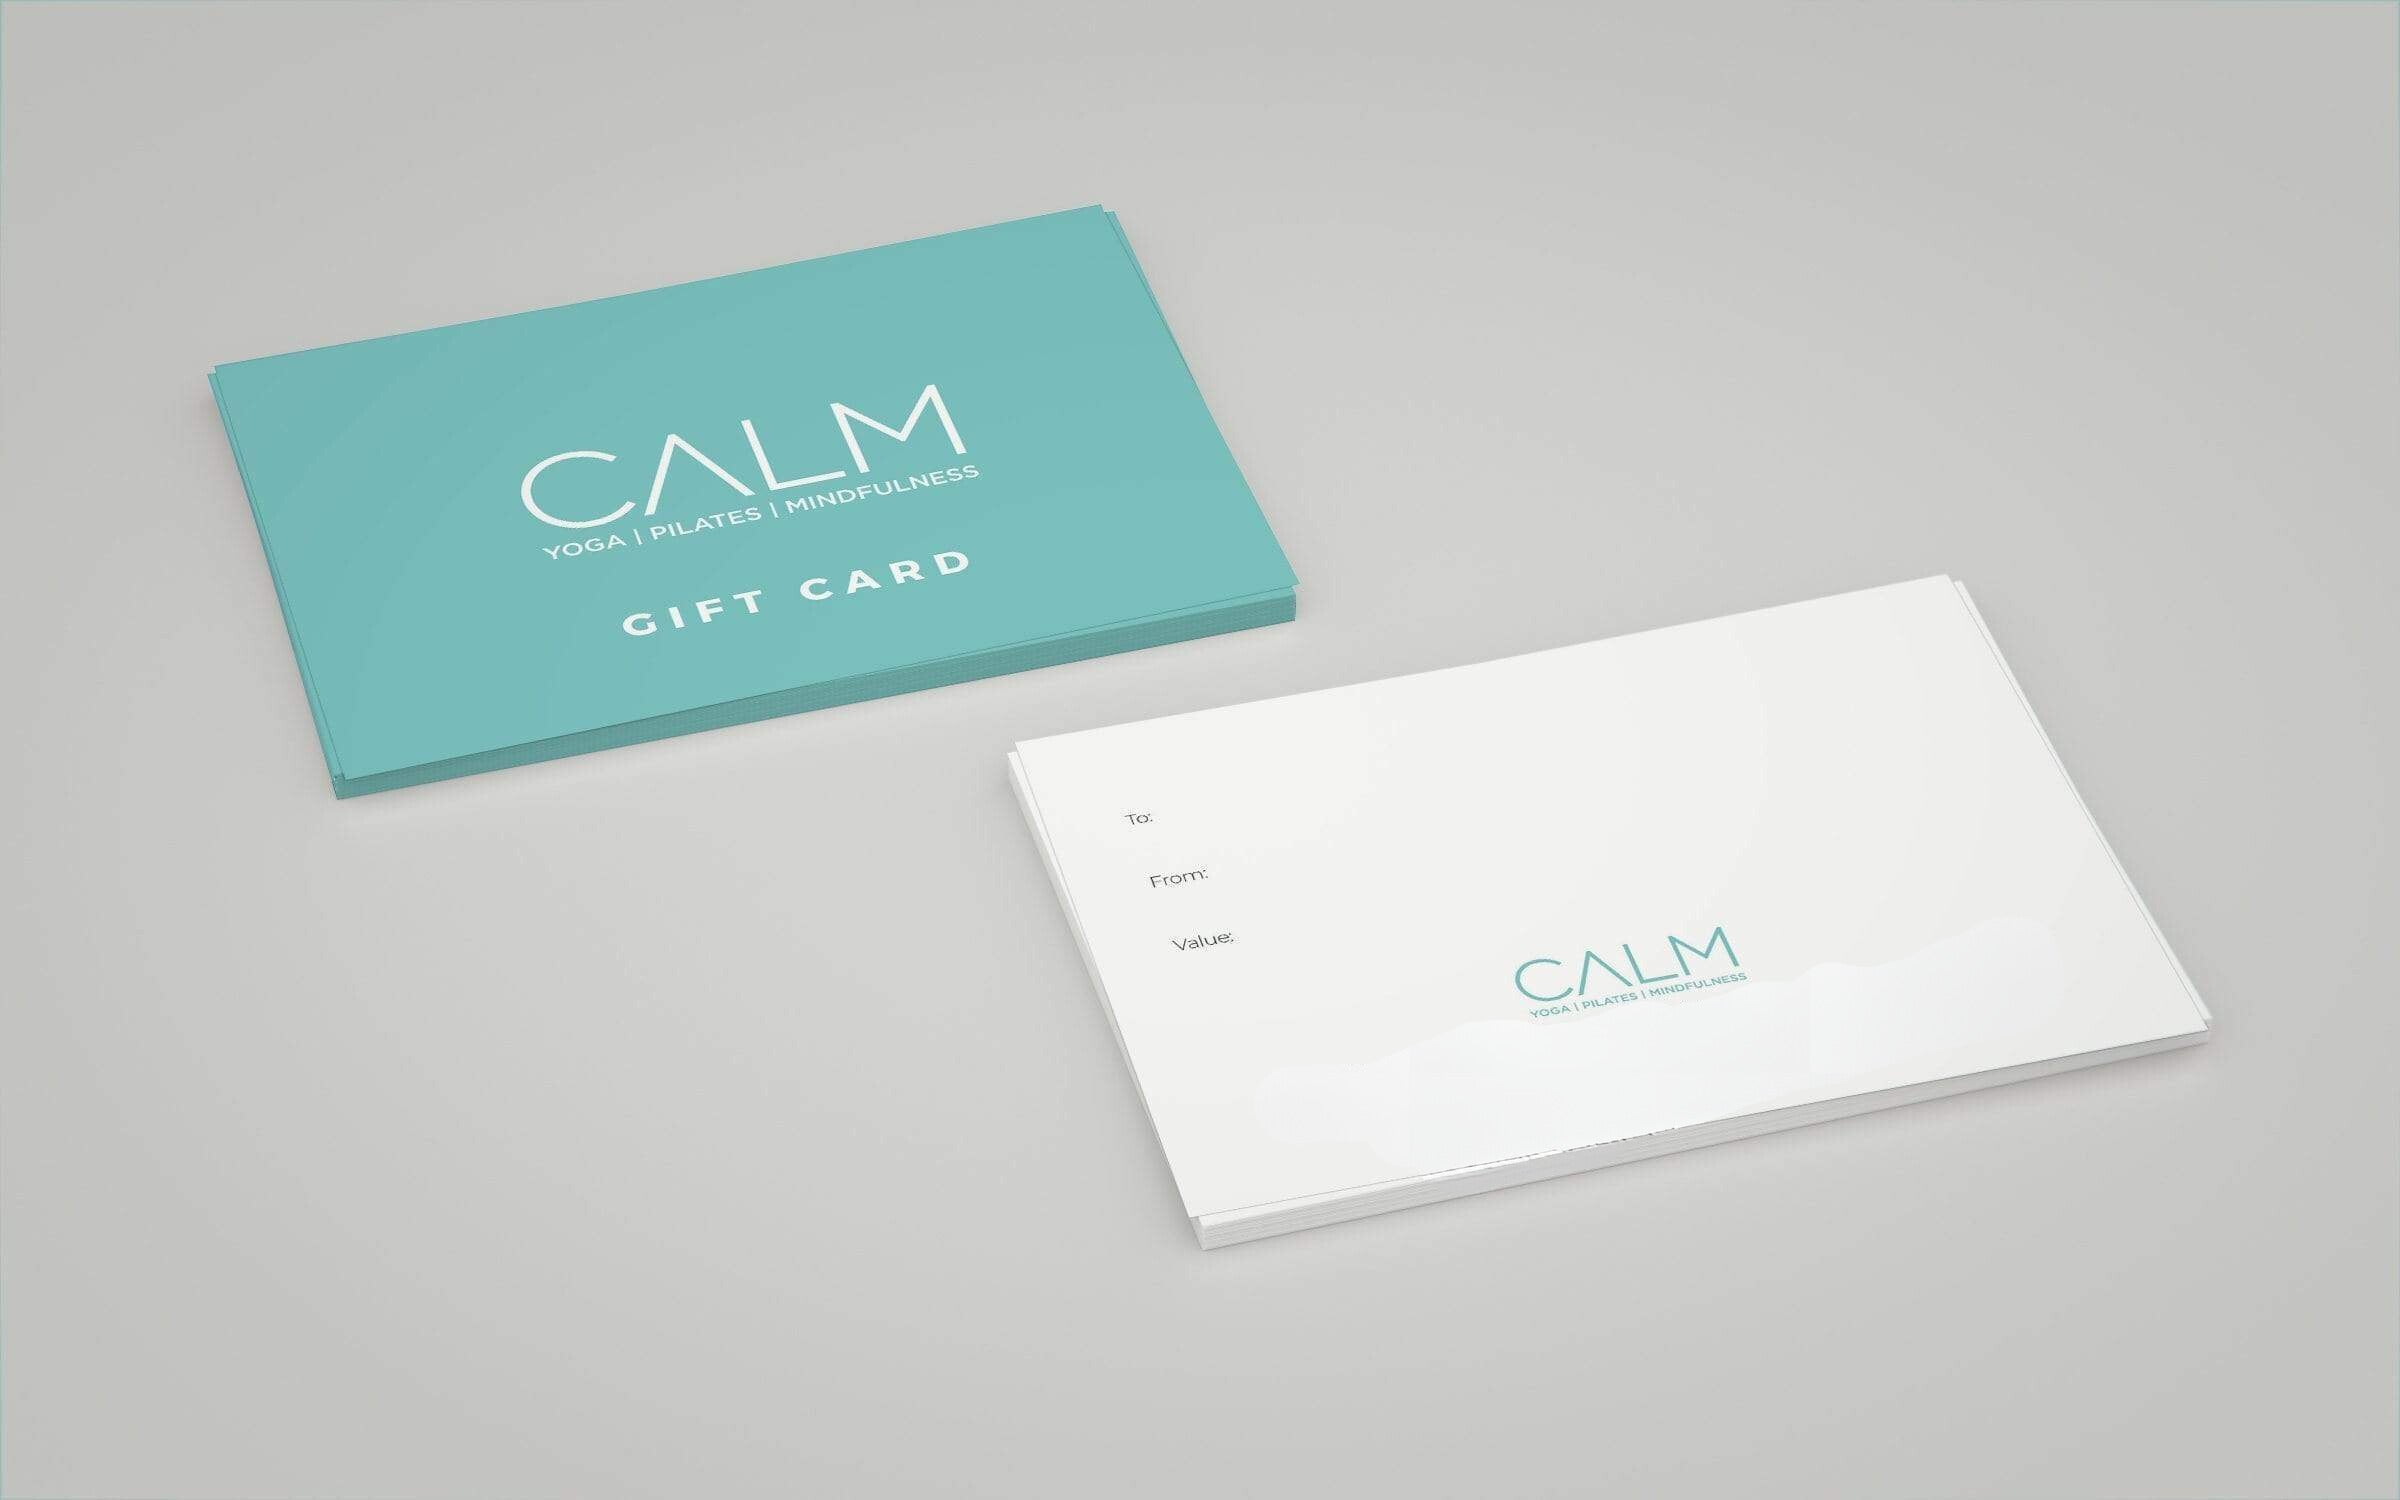 CALM Gift Card (Digital) - Instantly Delivered